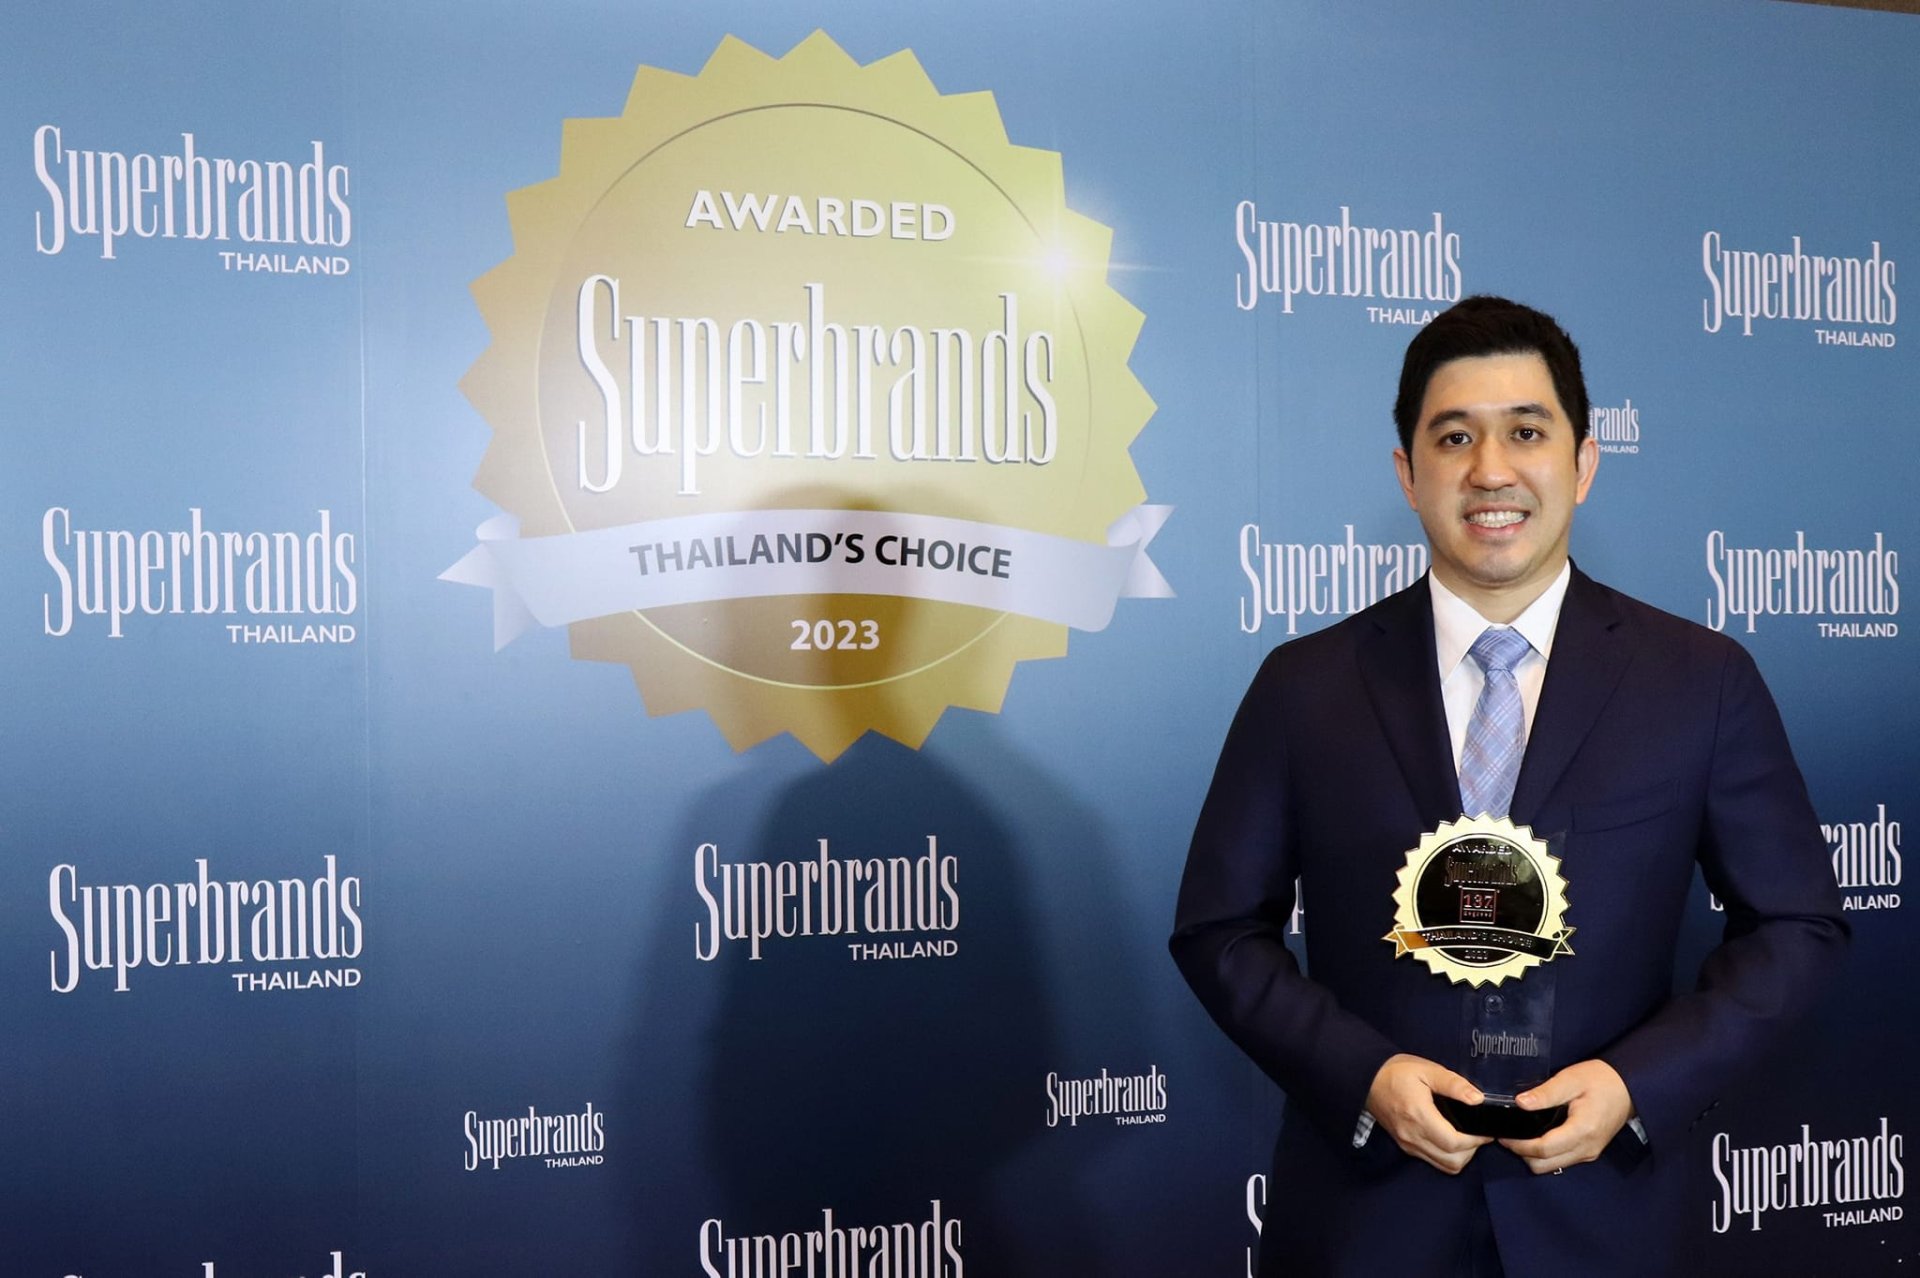 137 ดีกรี® คว้ารางวัล “Superbrands Thailand 2023” ตอกย้ำสุดยอดแบรนด์นมทางเลือกครองใจคนไทย